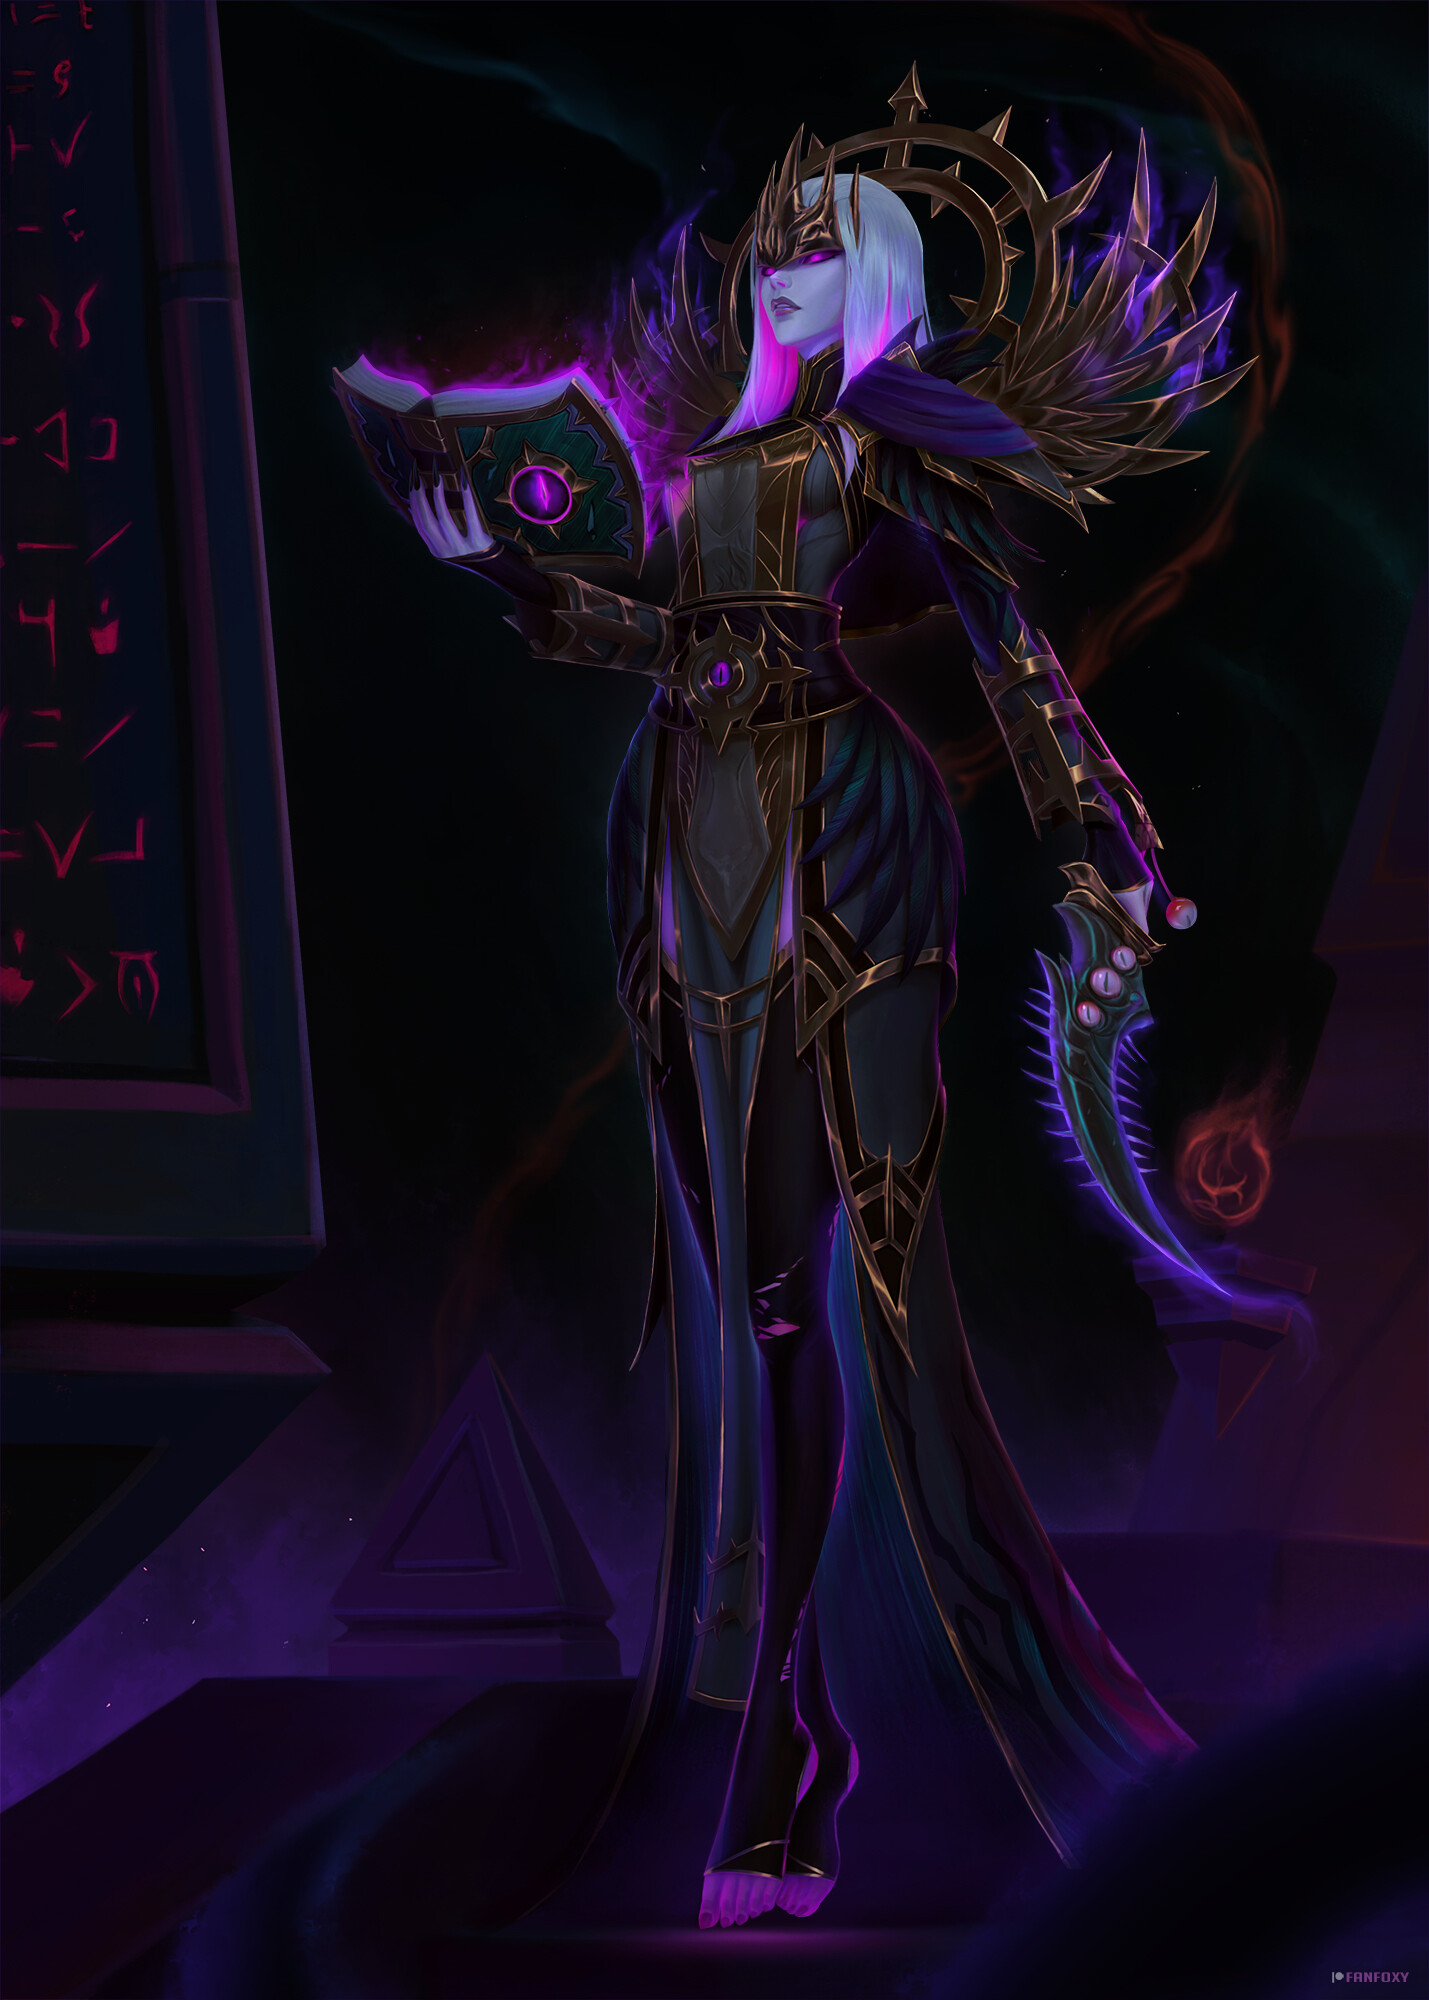 Fanfoxy Drawing Warcraft Priestess Priest Books Spell Shadow Weapon Dagger Purple Dress Dark Xalatat 1429x2000